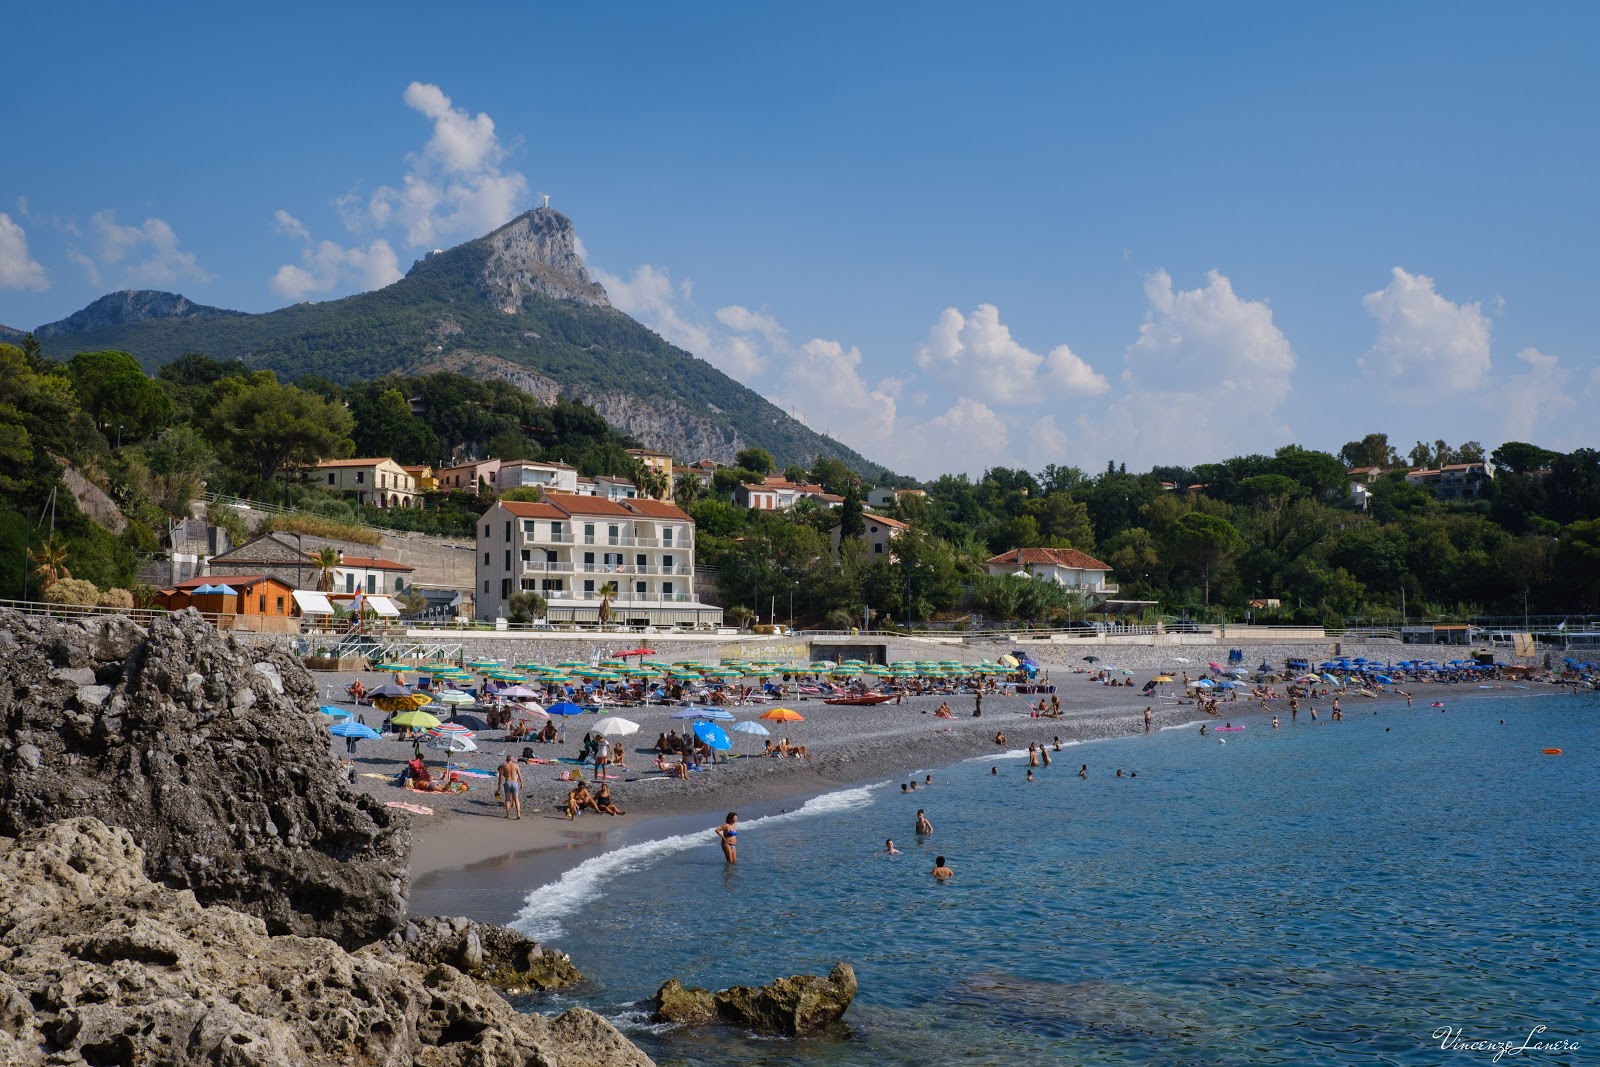 Foto de Spiaggia di Fiumicello - lugar popular entre los conocedores del relax